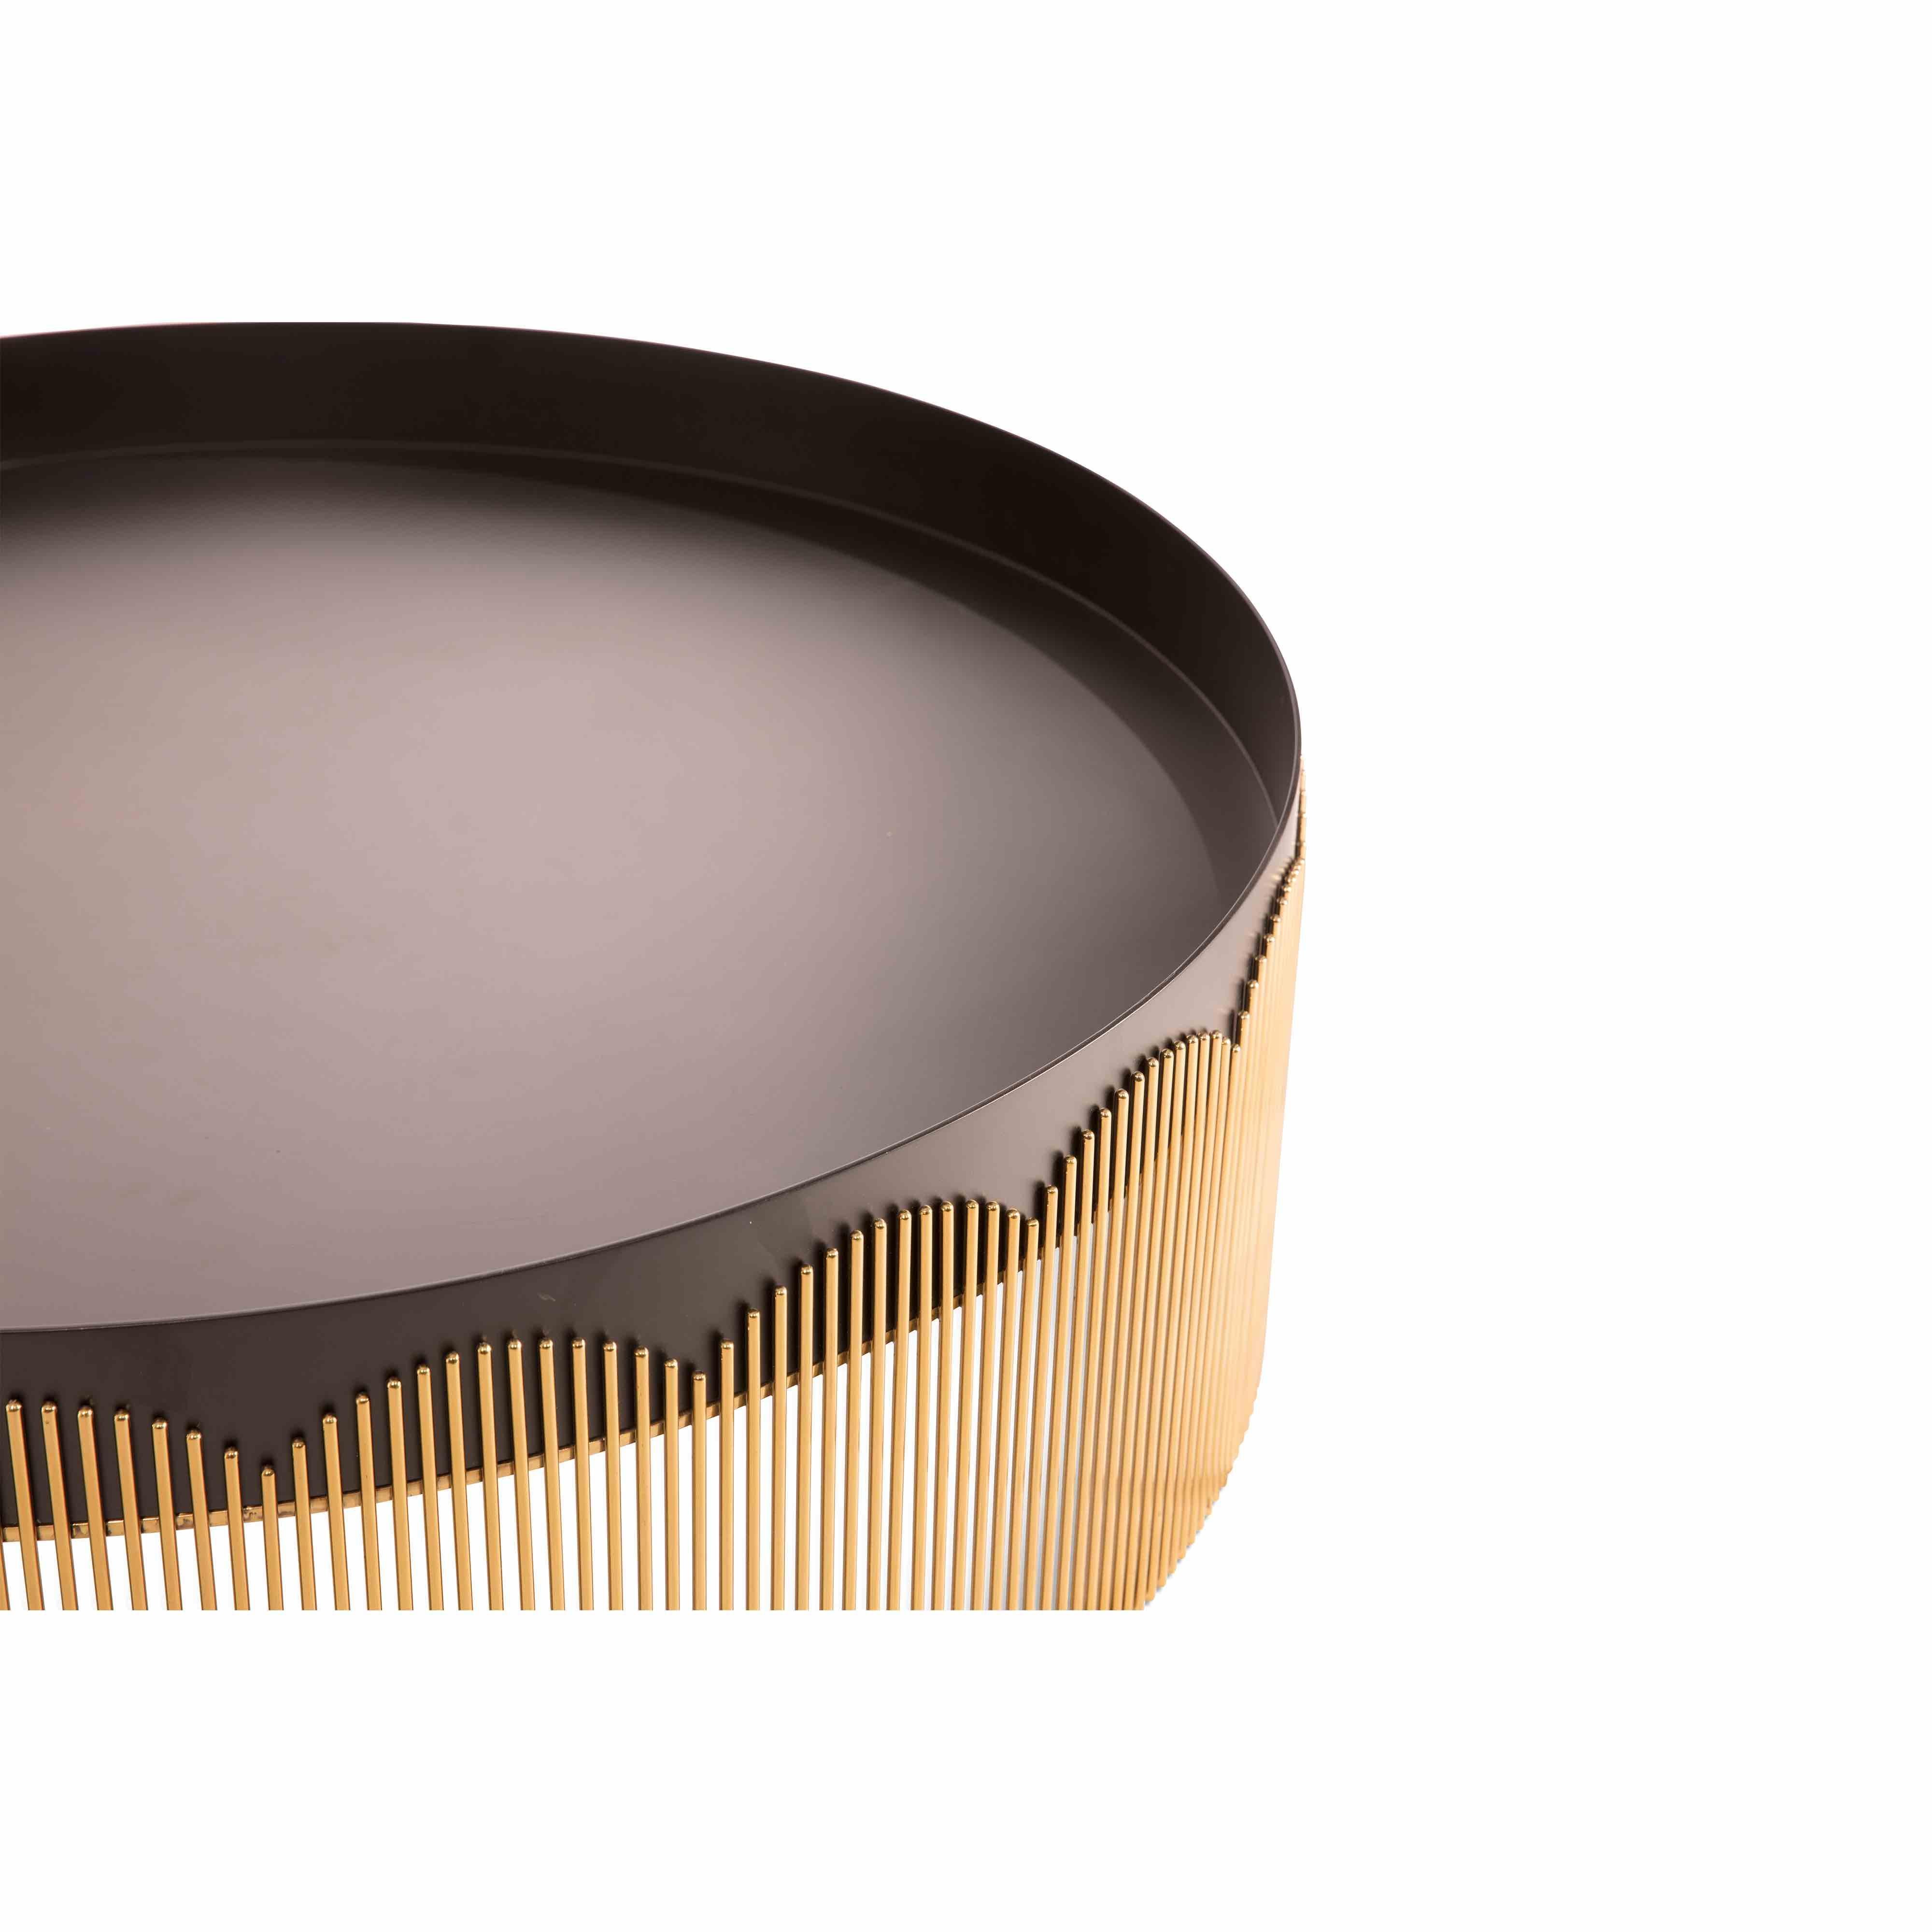 La table basse Strings en métal doré et noir de NIKA ZUPANC est élégante avec sa base en acier doré en forme de dentelle et son plateau noir mat.

Le mot 